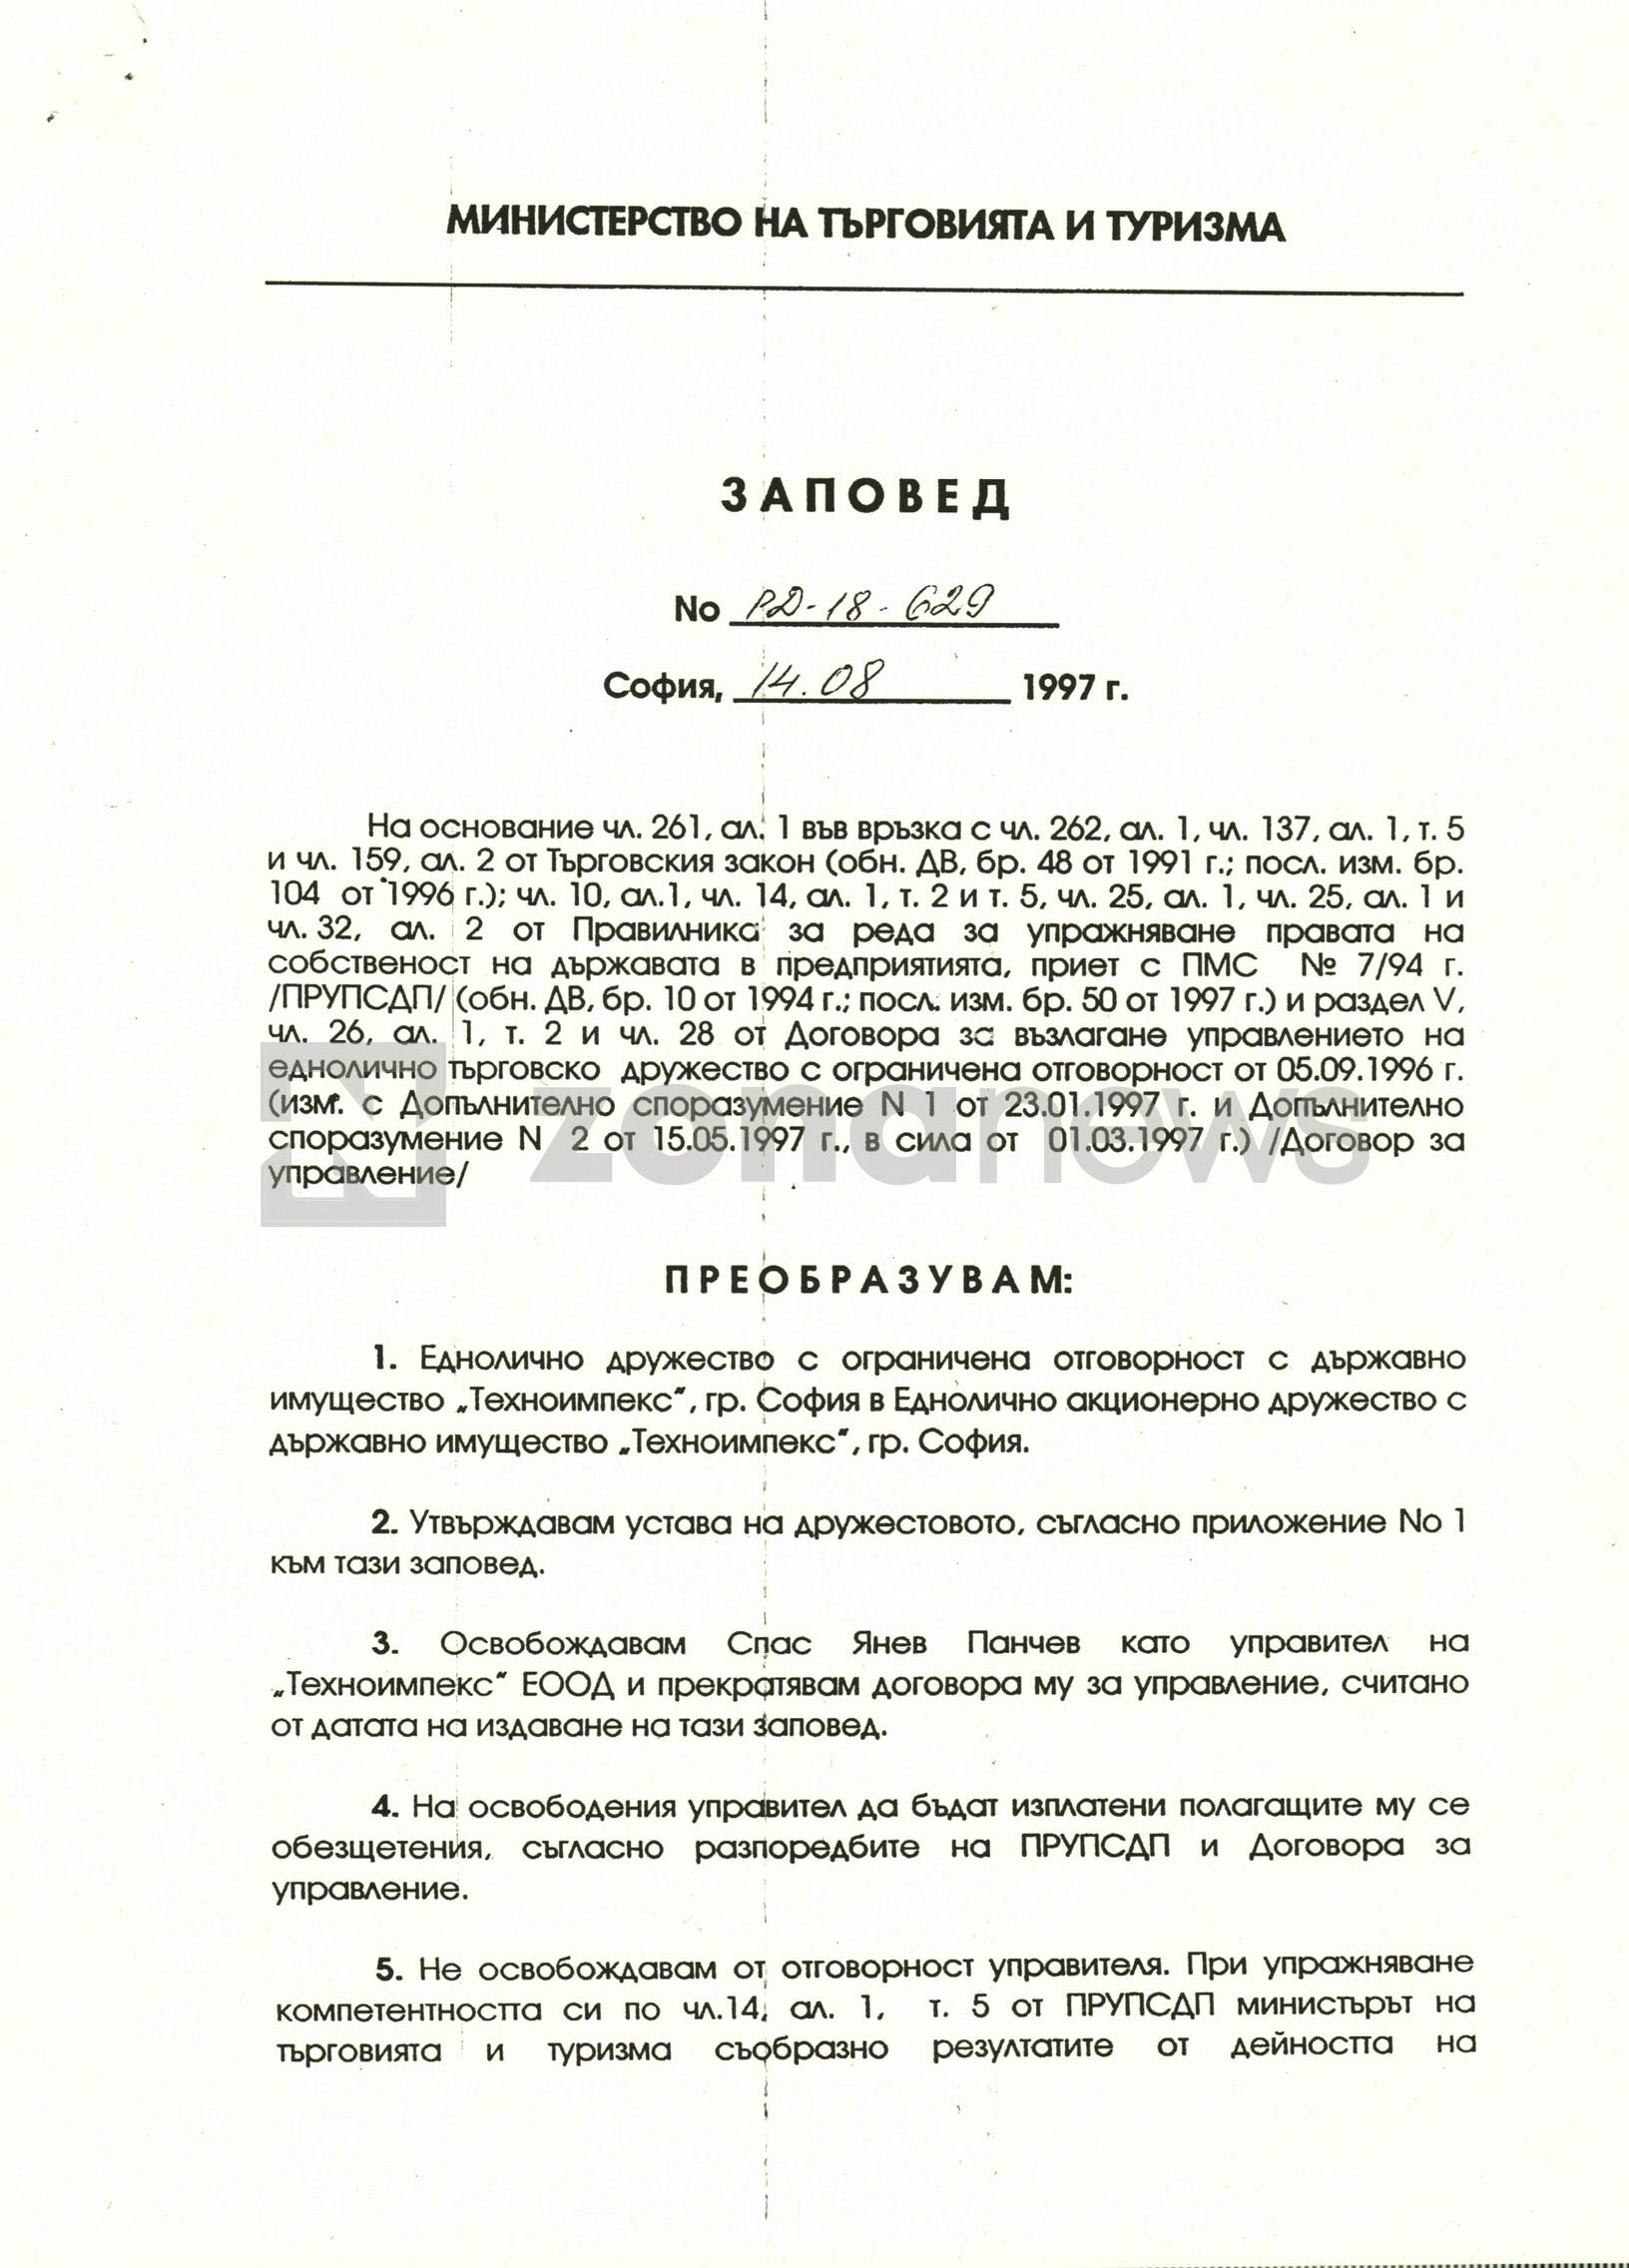 Заповедта на Валентин Василев от 1997 г., за назначаването на Нинова в Съвета на директорите на Техноимпекс